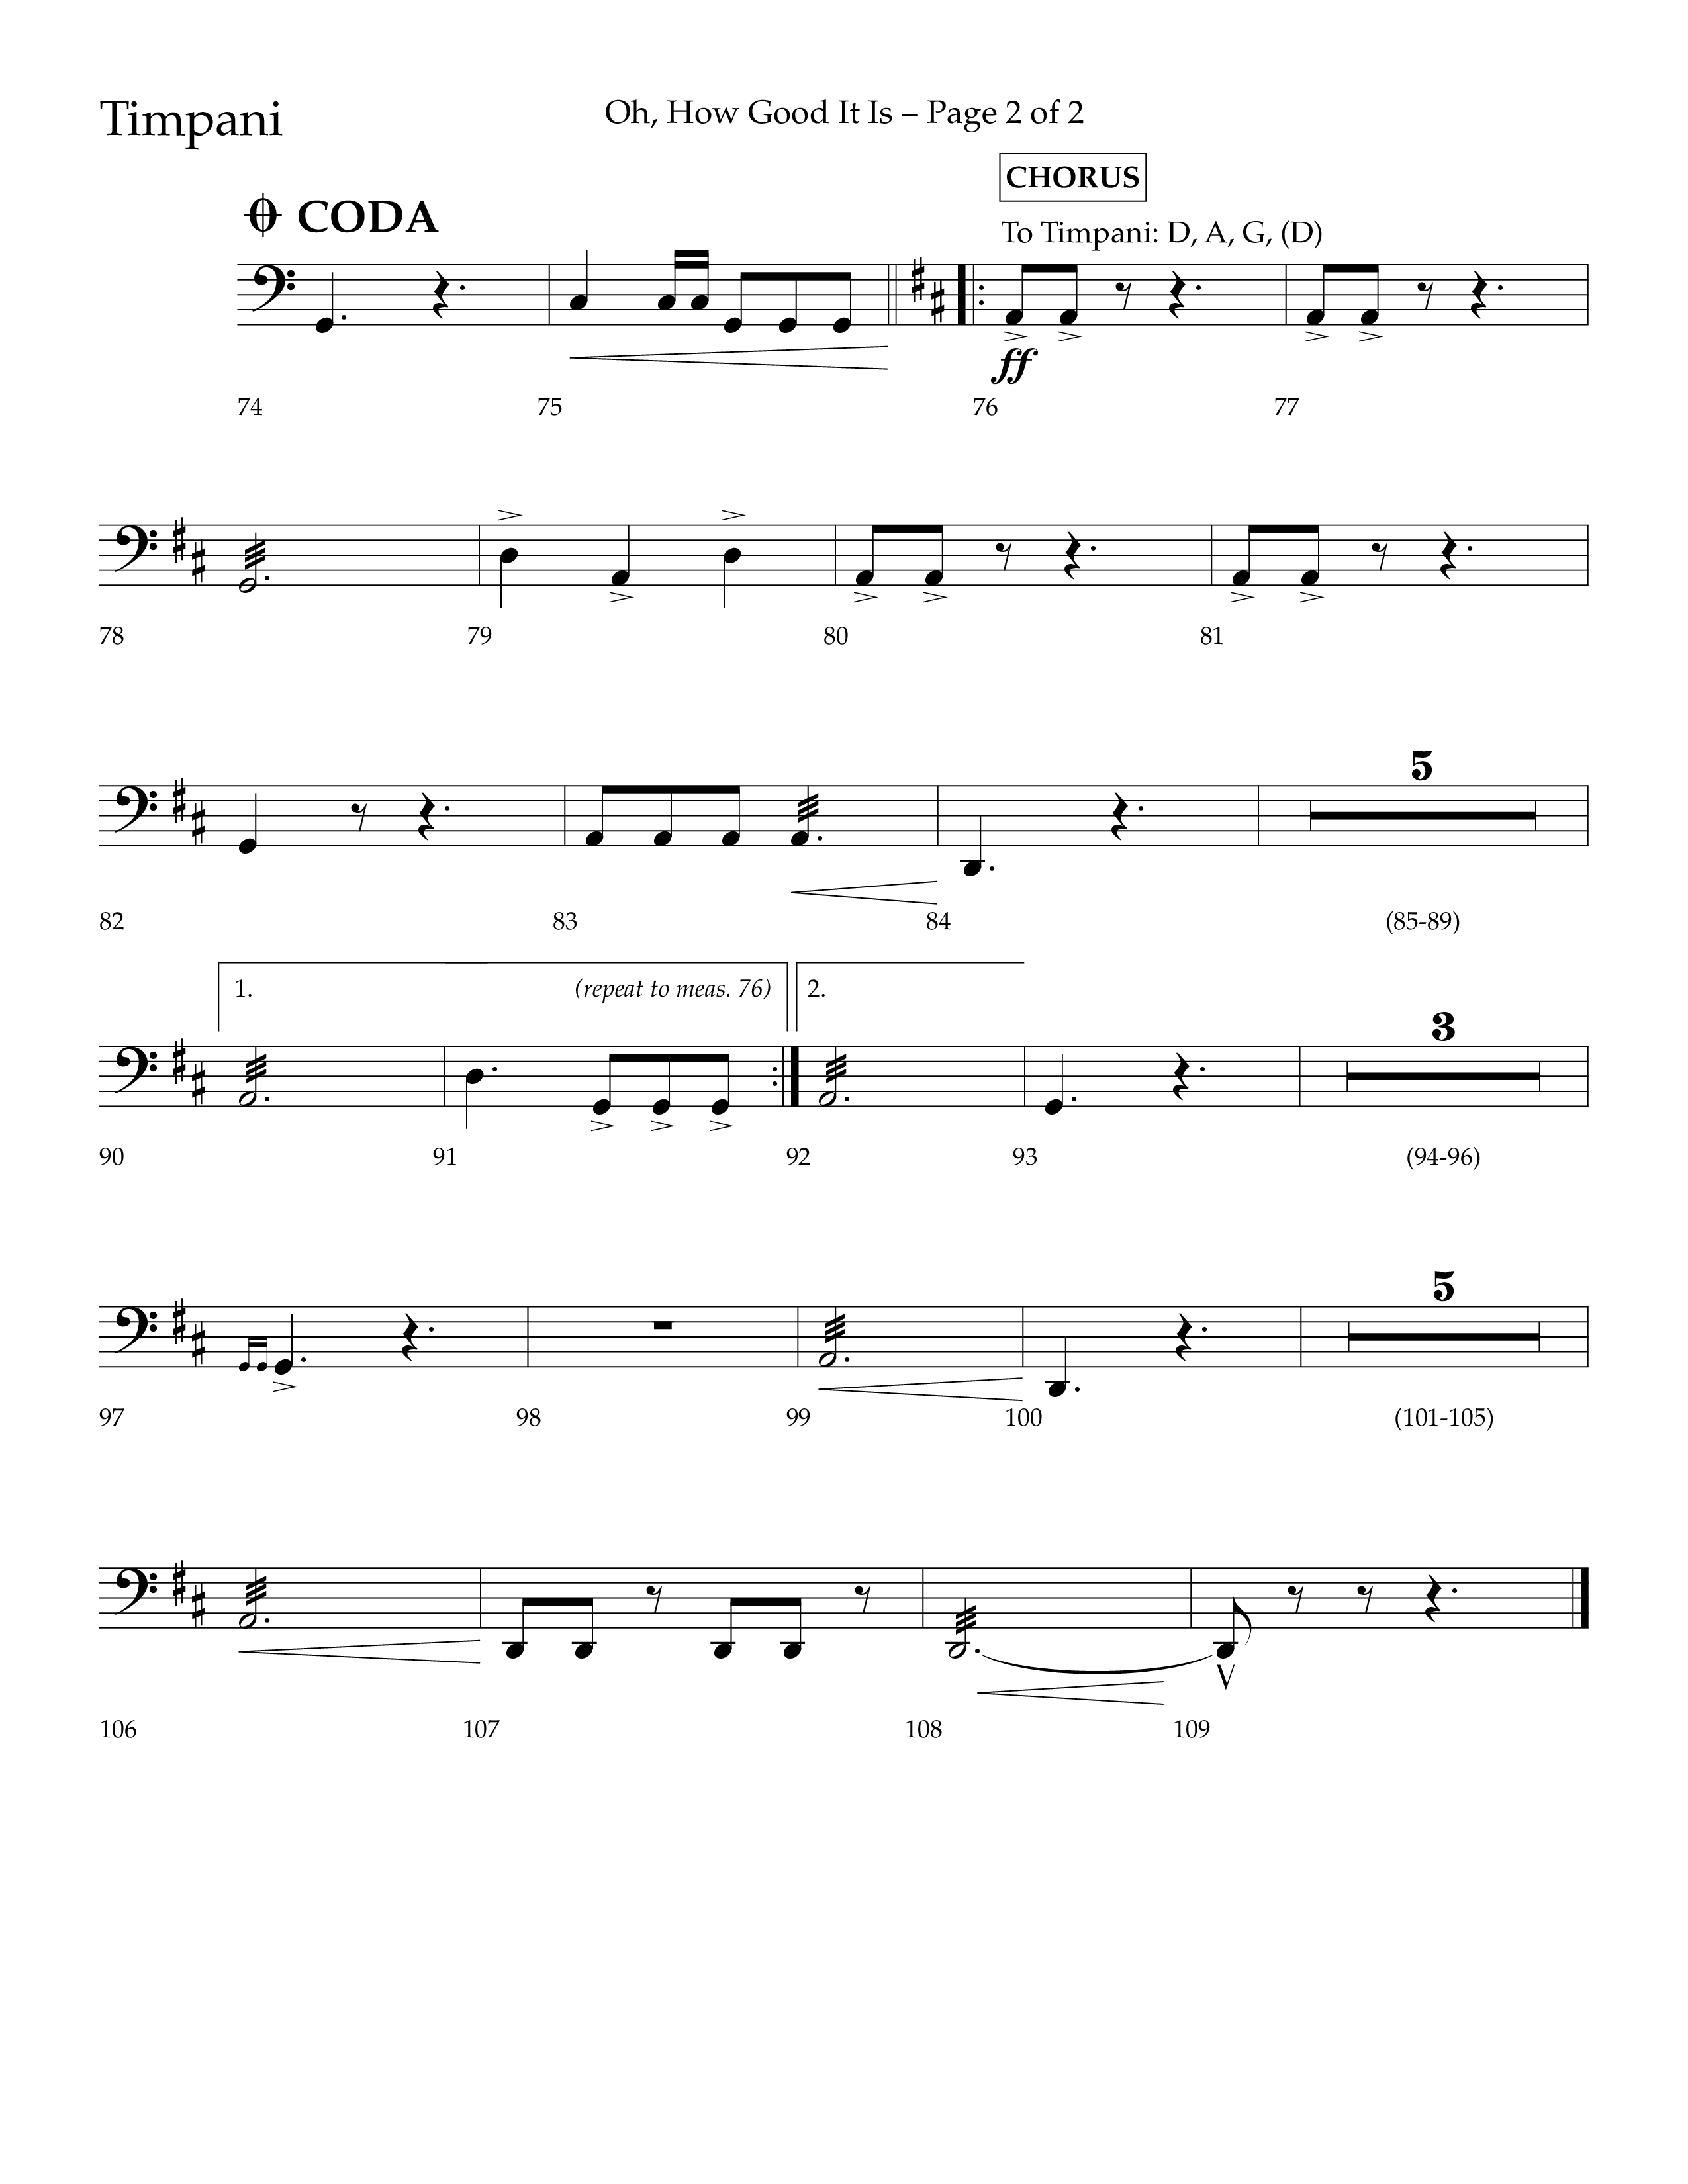 Oh How Good It Is (Choral Anthem SATB) Timpani (Lifeway Choral / Arr. David Hamilton)